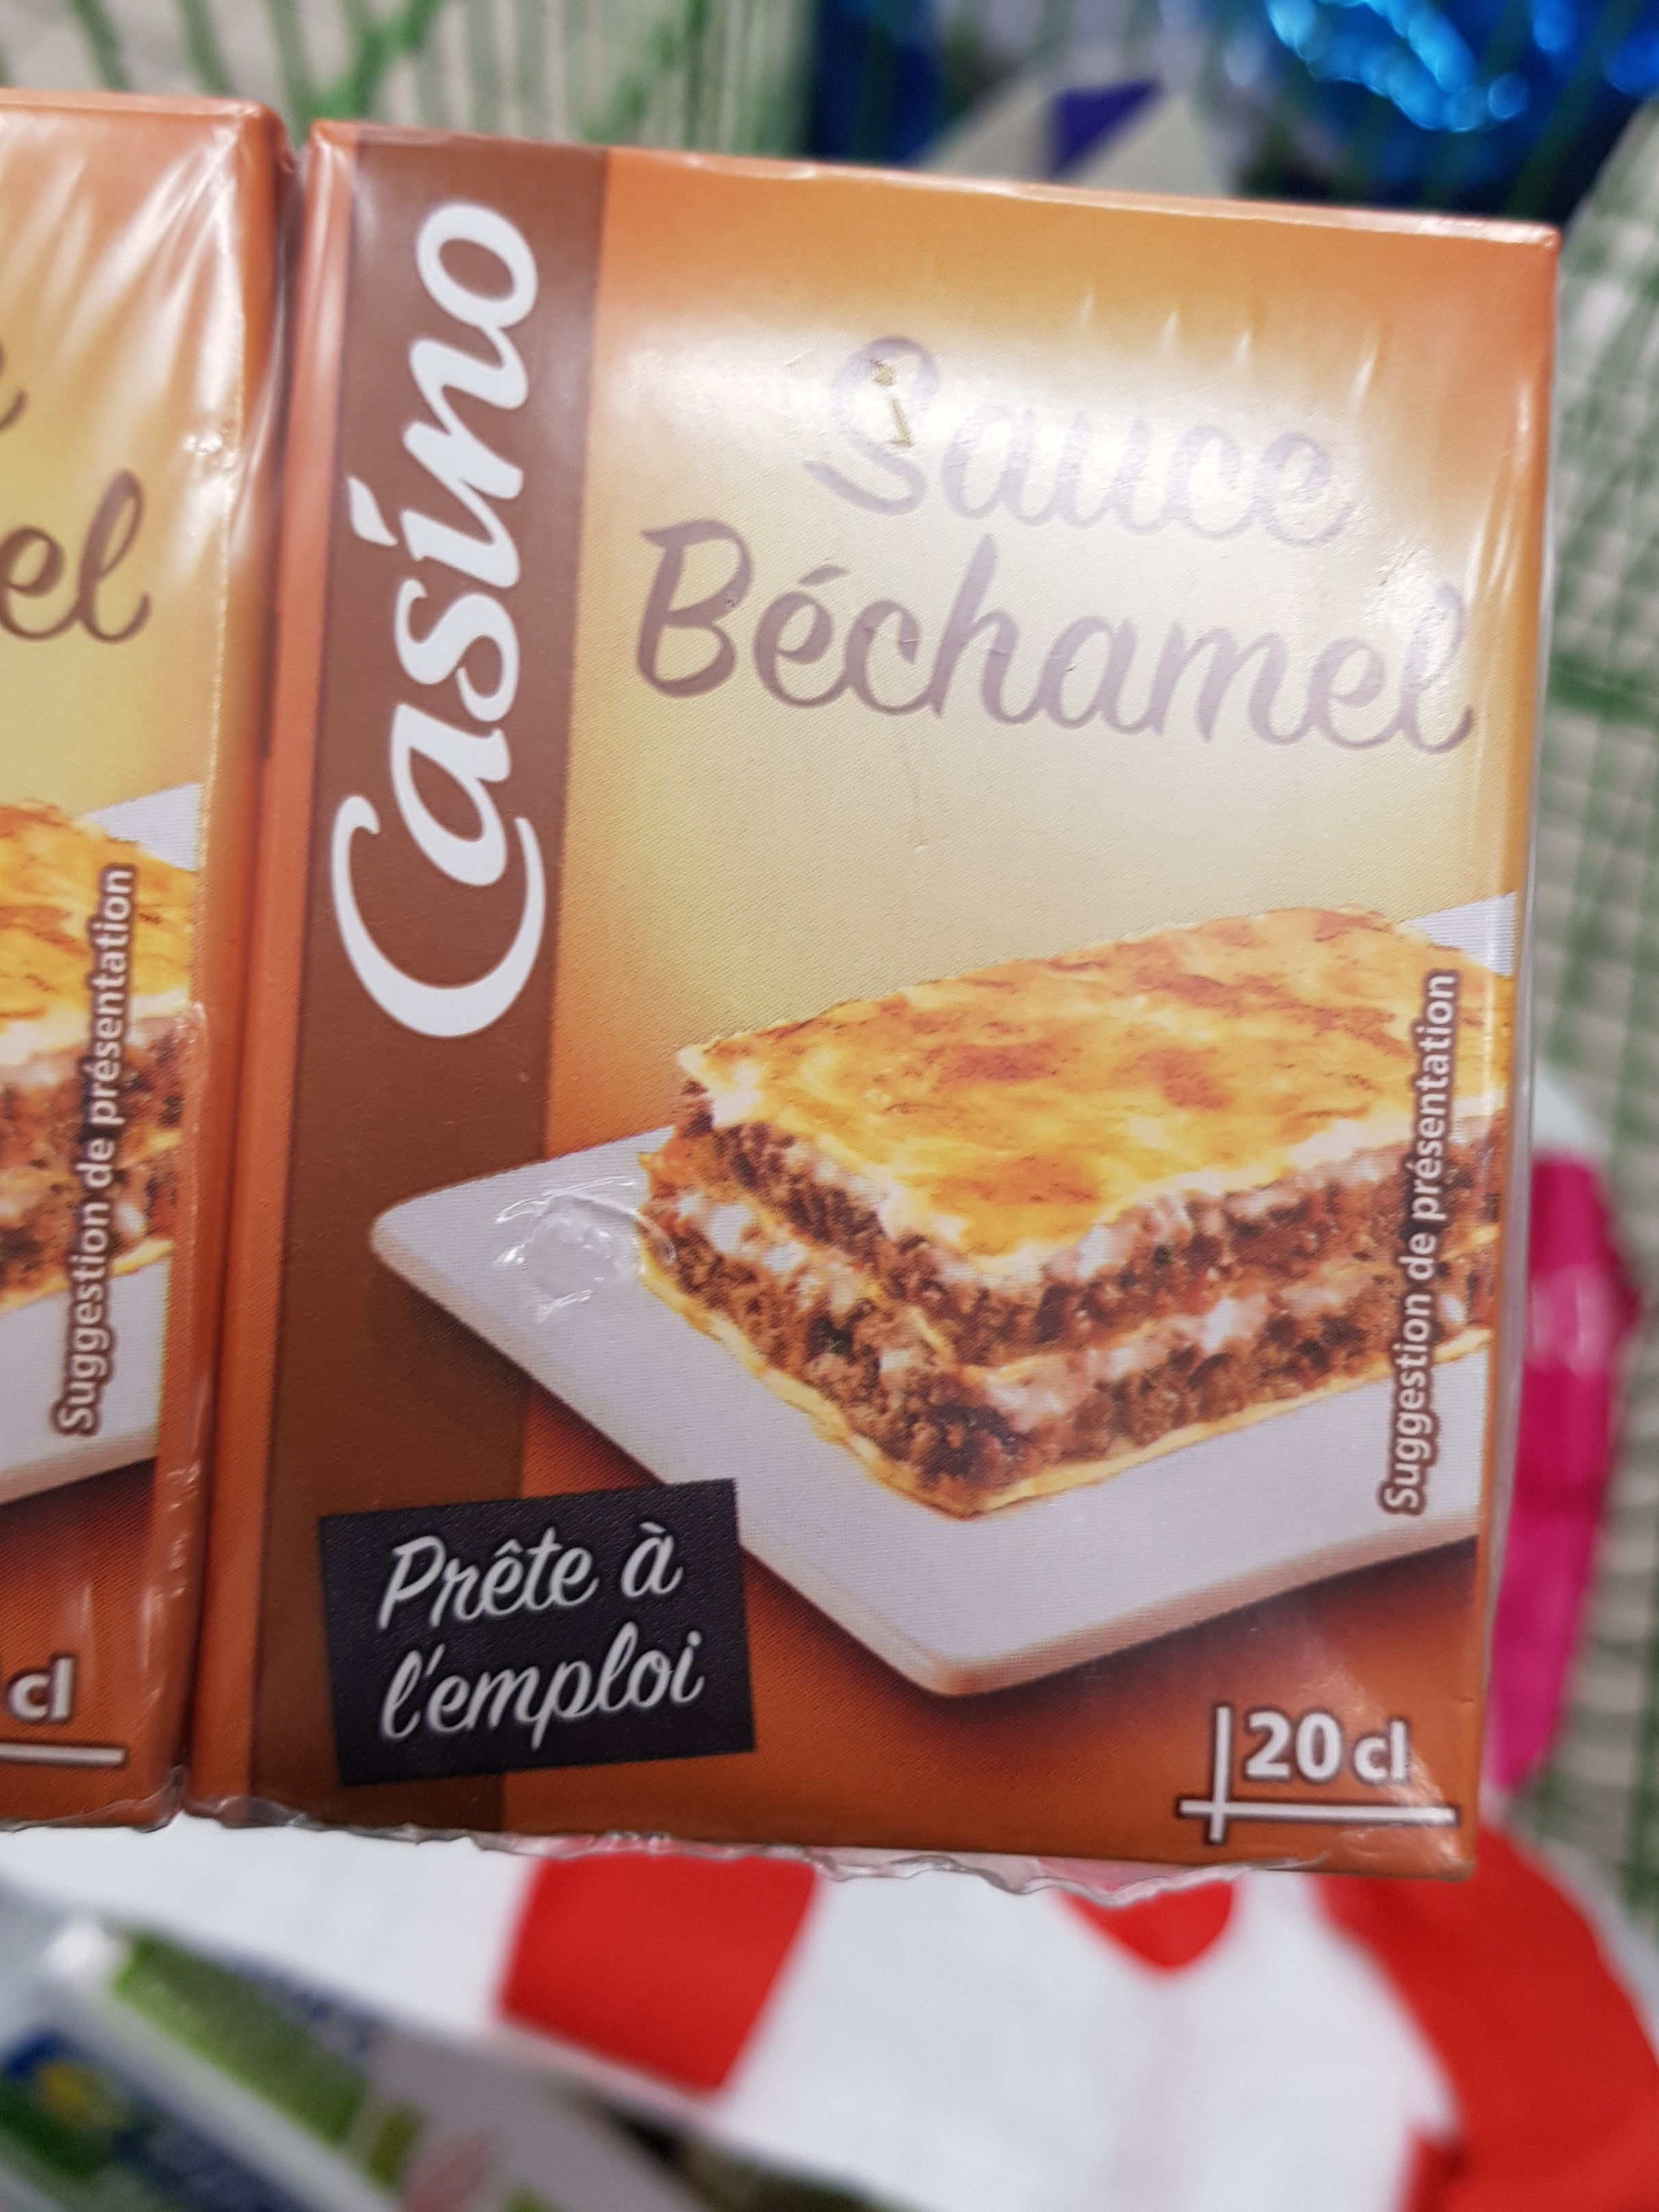 Sauce Béchamel - Product - fr